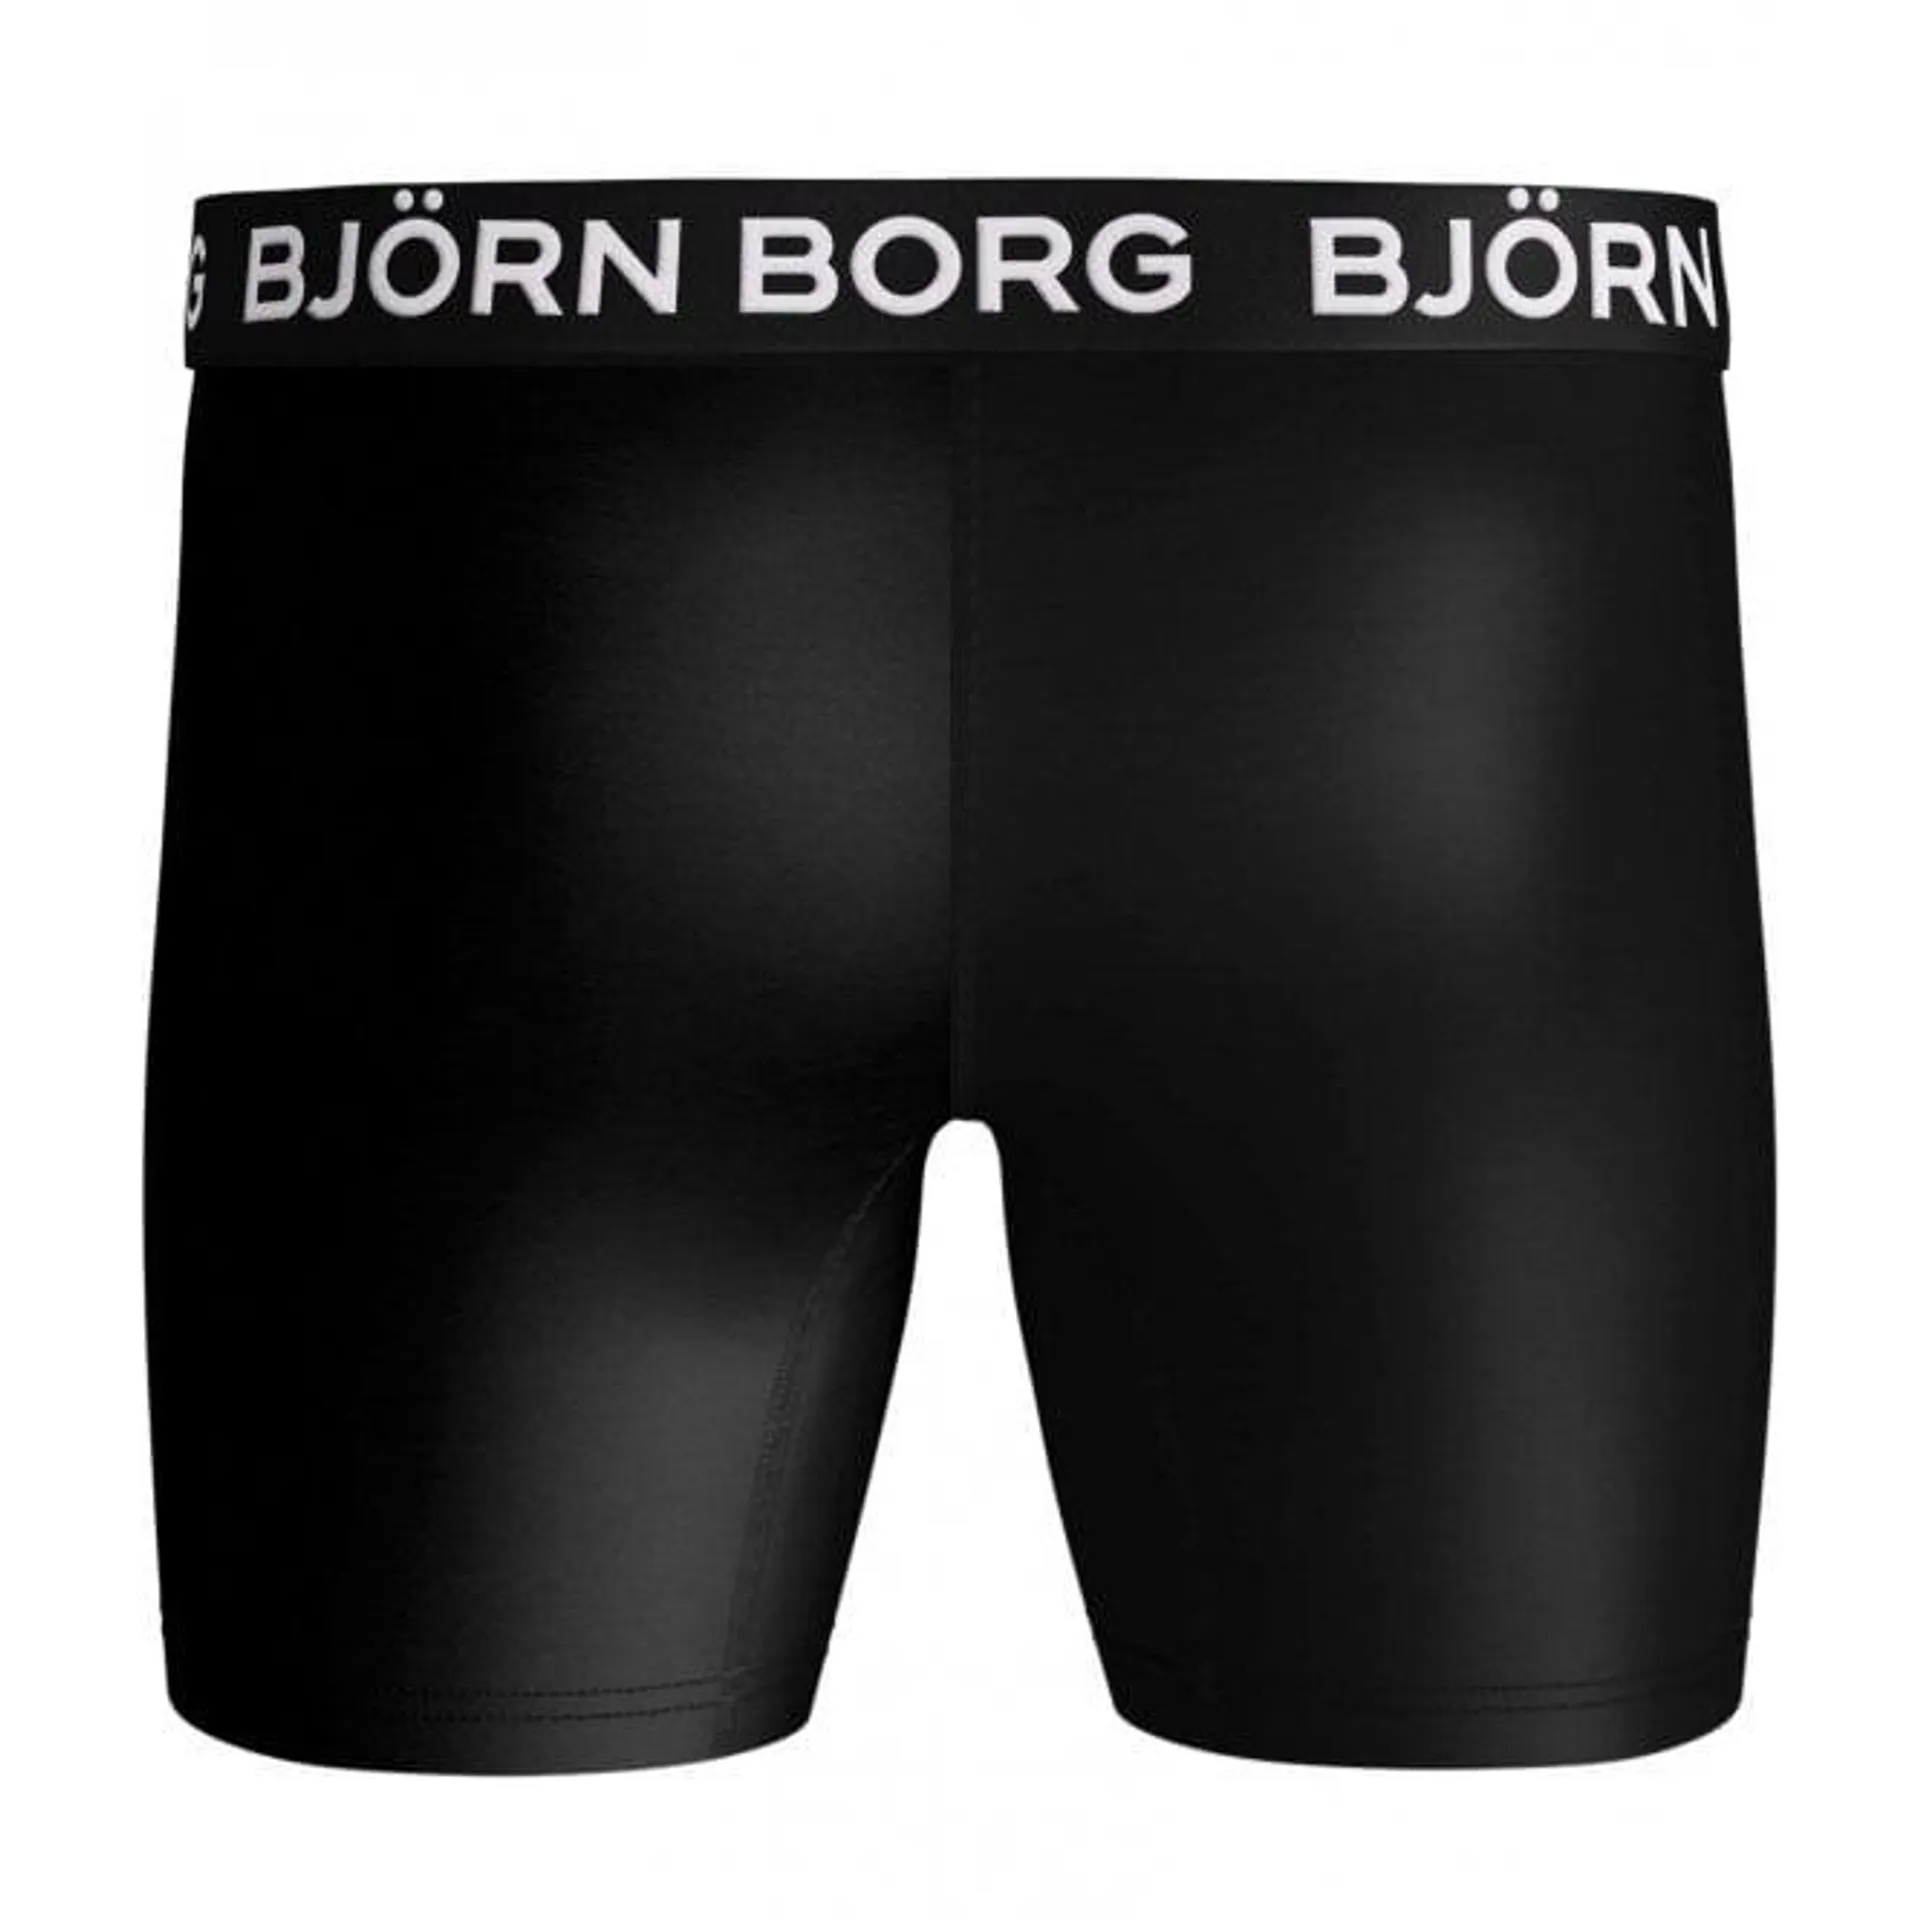 Bjorn Borg 3-Pack Performance Boys Boxer Trunks, Black